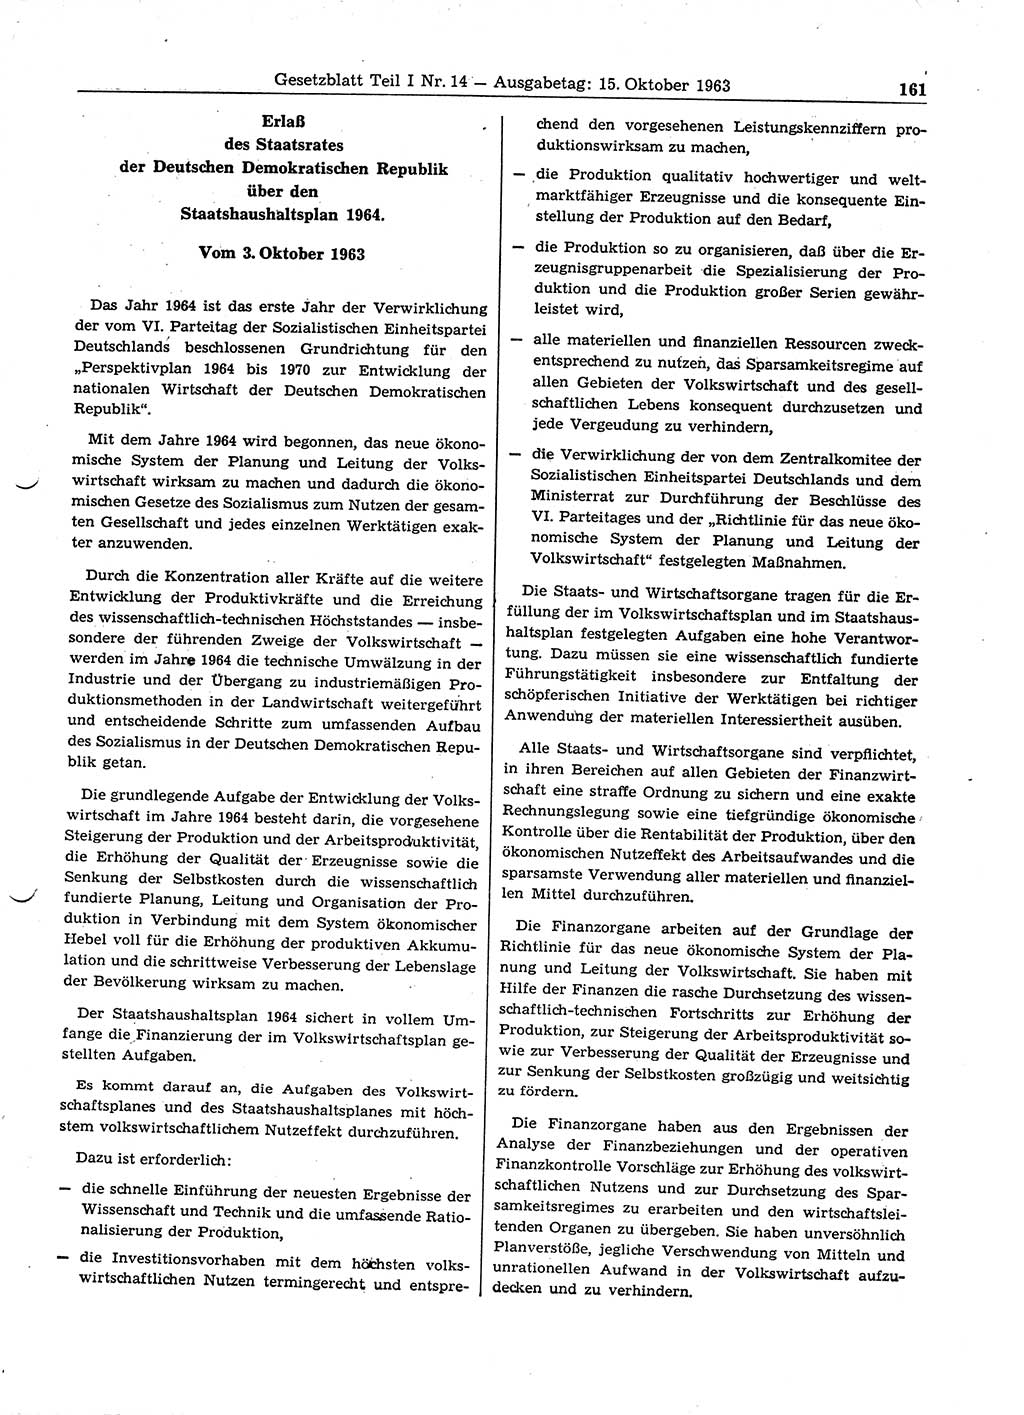 Gesetzblatt (GBl.) der Deutschen Demokratischen Republik (DDR) Teil Ⅰ 1963, Seite 161 (GBl. DDR Ⅰ 1963, S. 161)